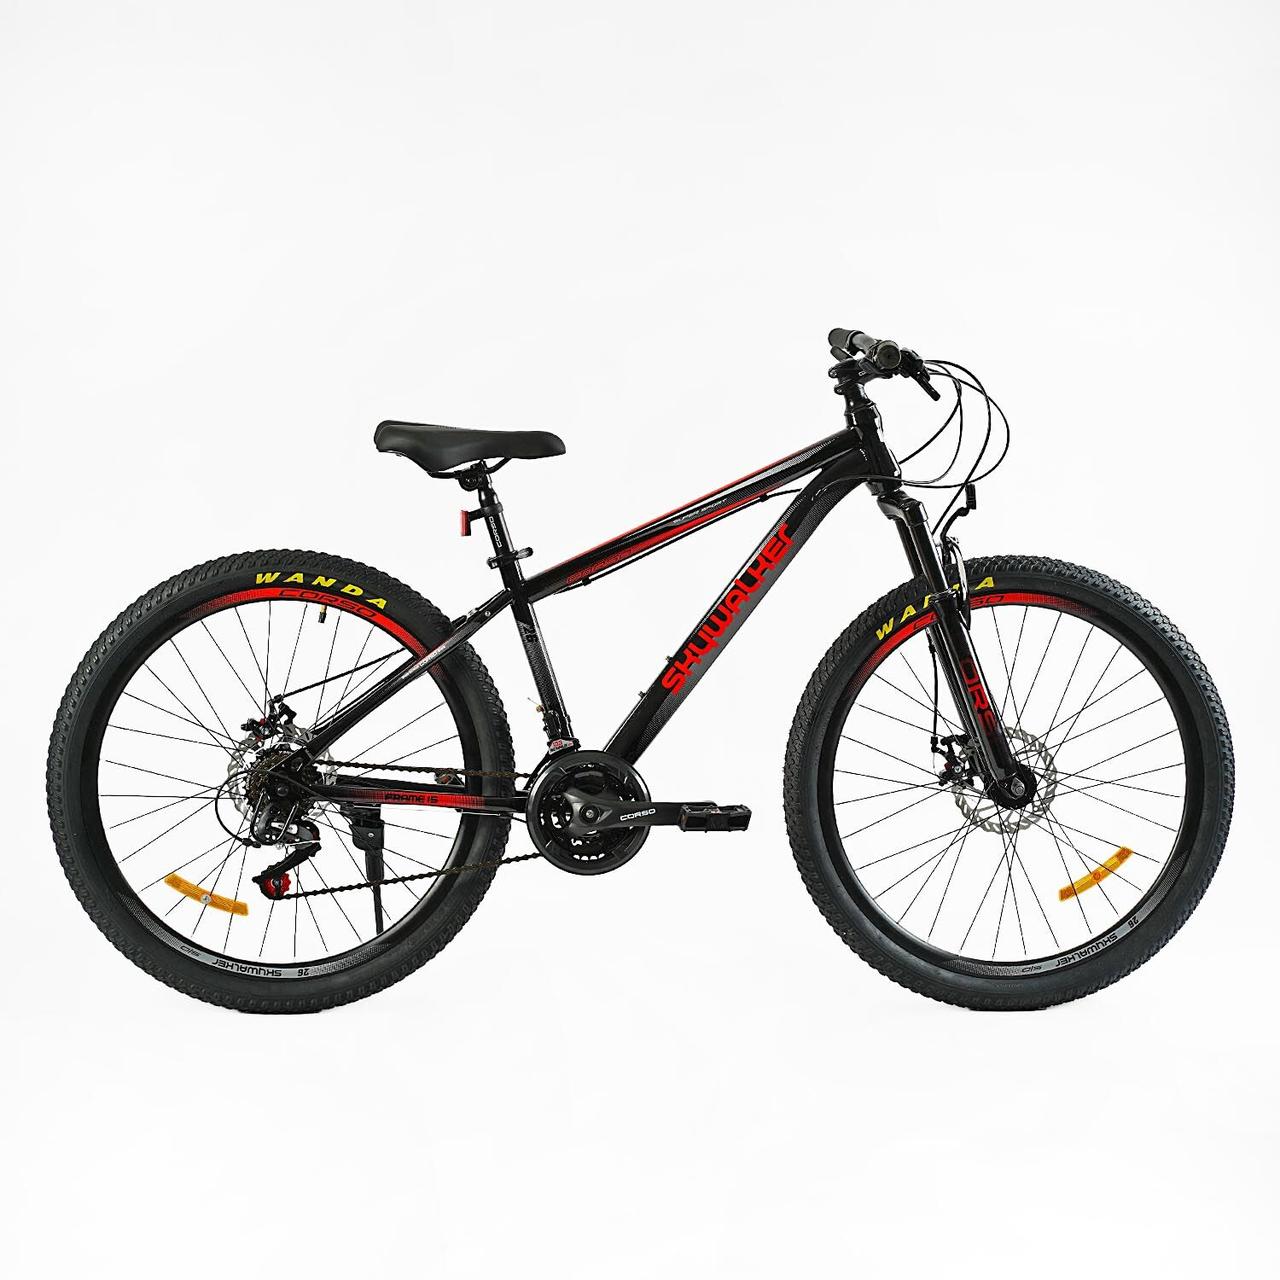 Гірський швидкісний велосипед Corso Skywalker 26" сталева рама 15", SunRun 21S, зібраний в коробці на 75%